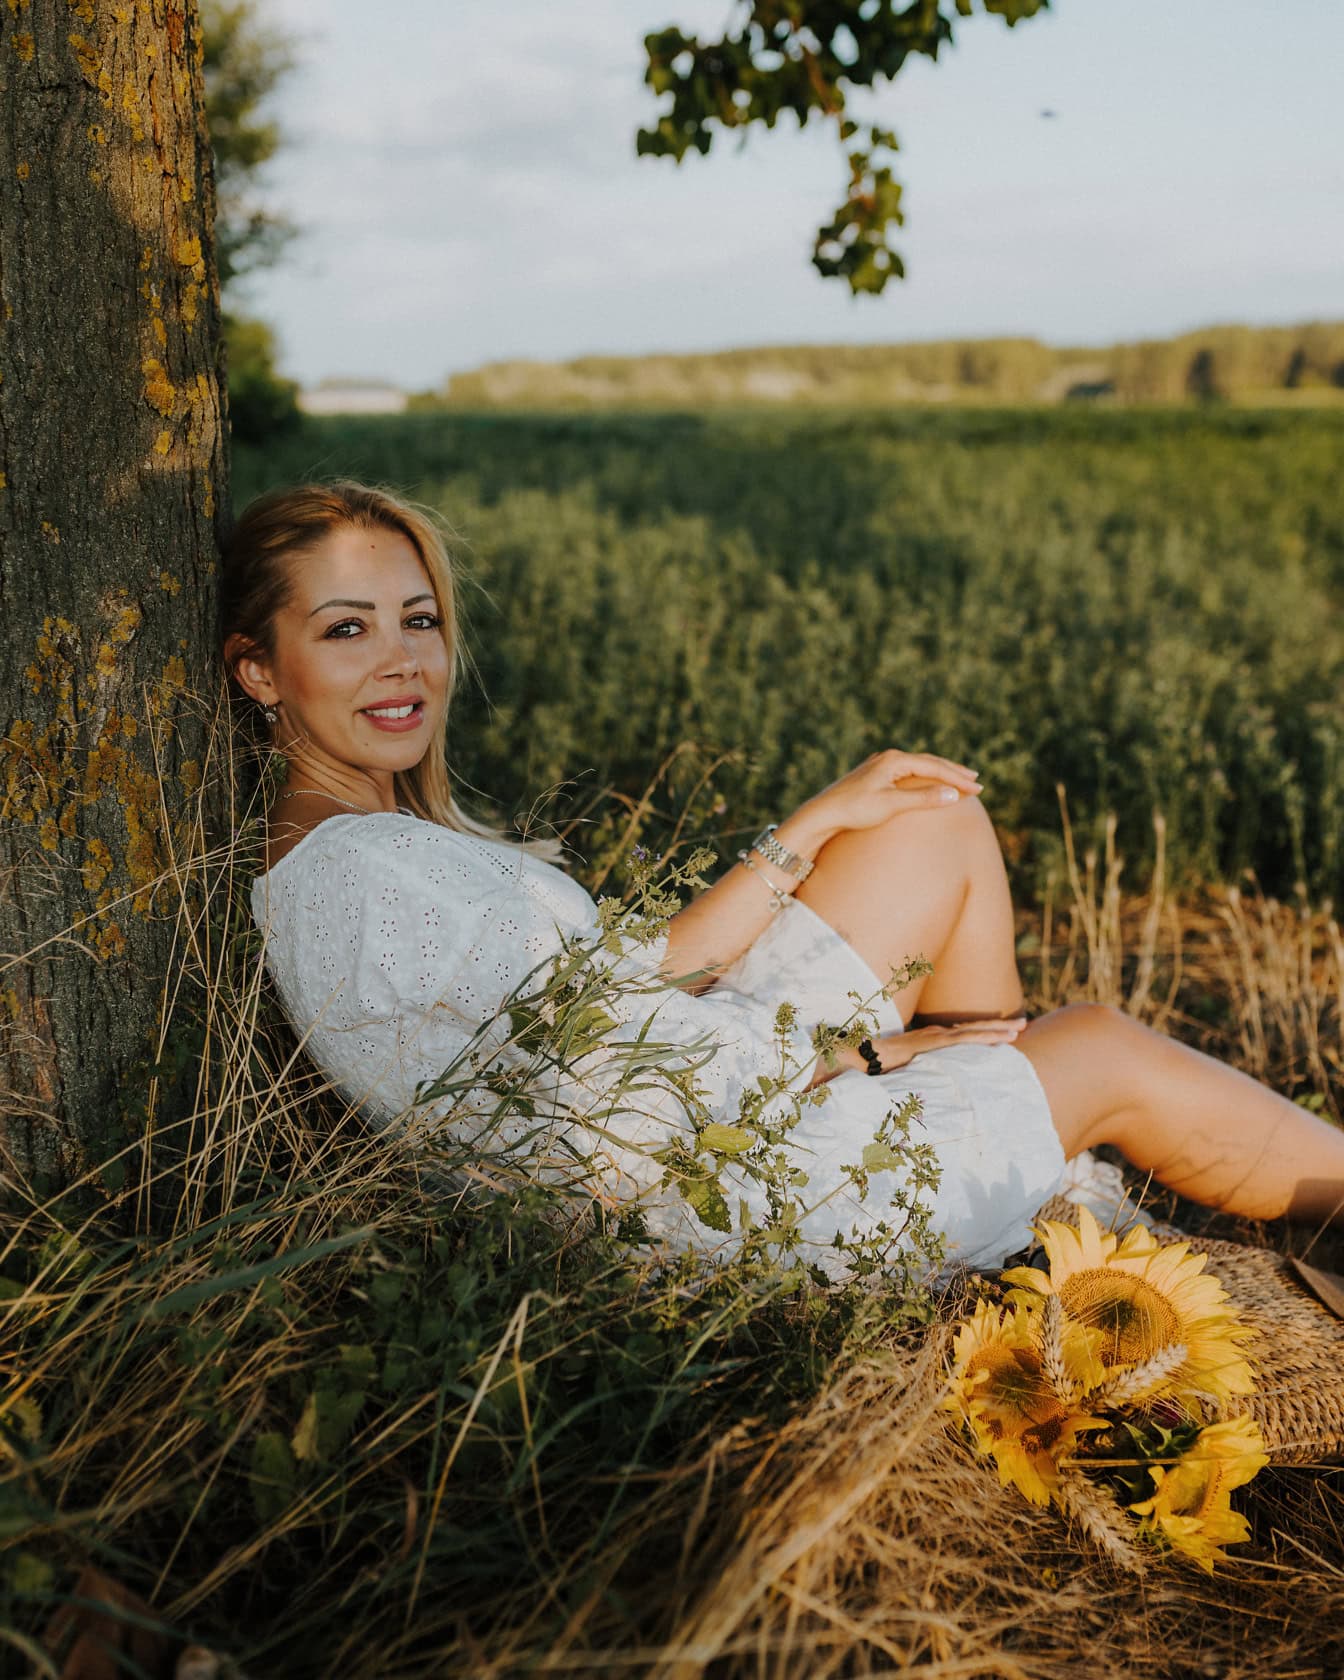 Porträtt av en fantastiskt vacker blondin som sitter i den gräsbevuxna ängen under ett träd